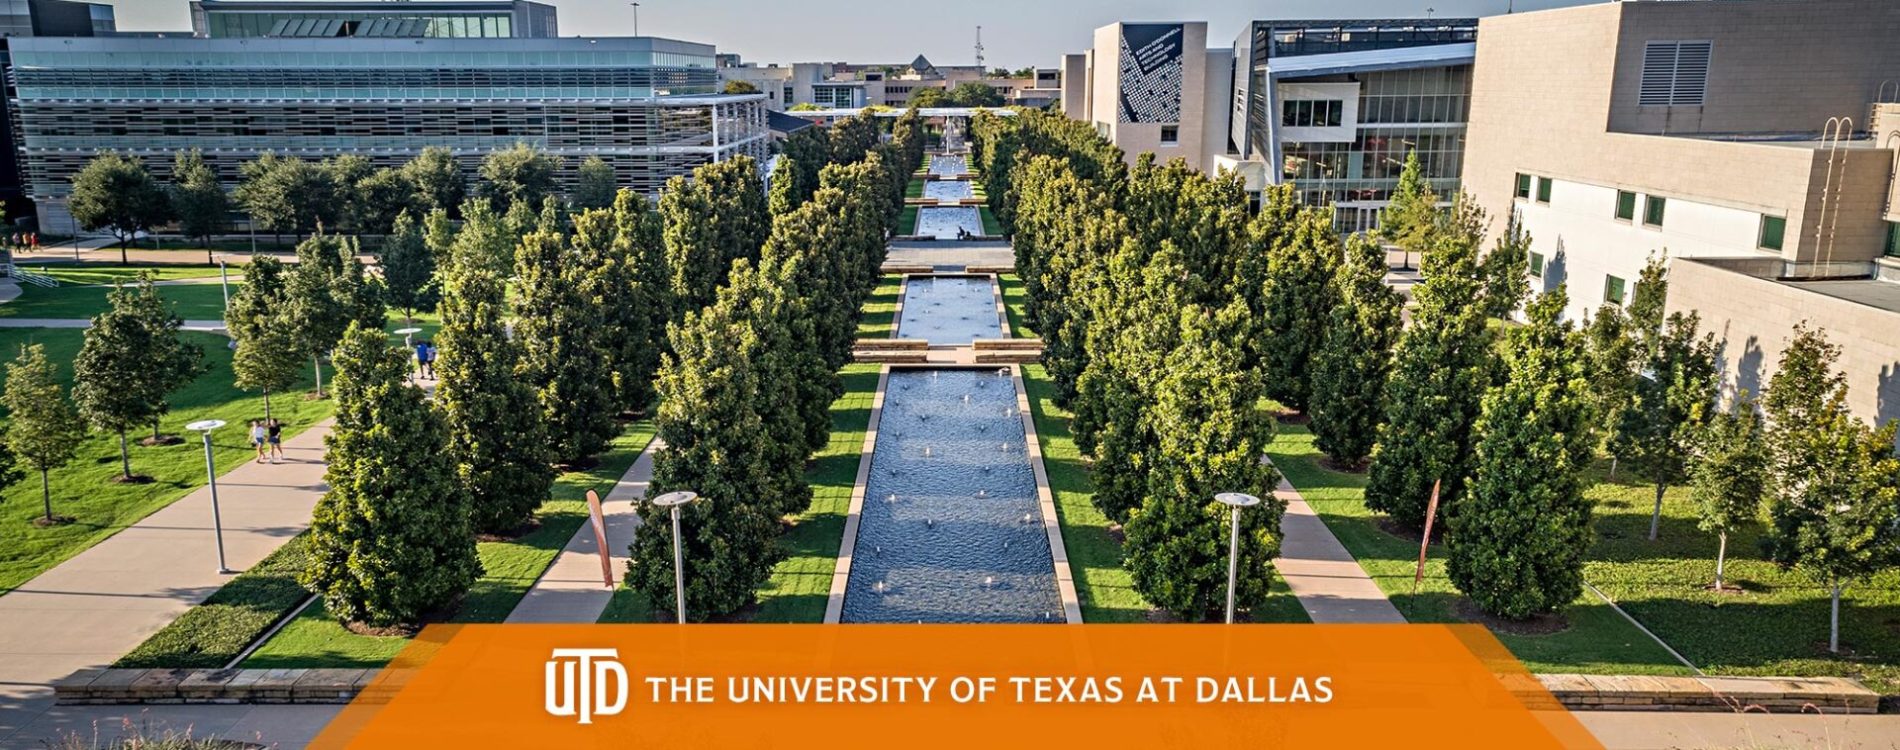 Đại học Texas ở Dallas